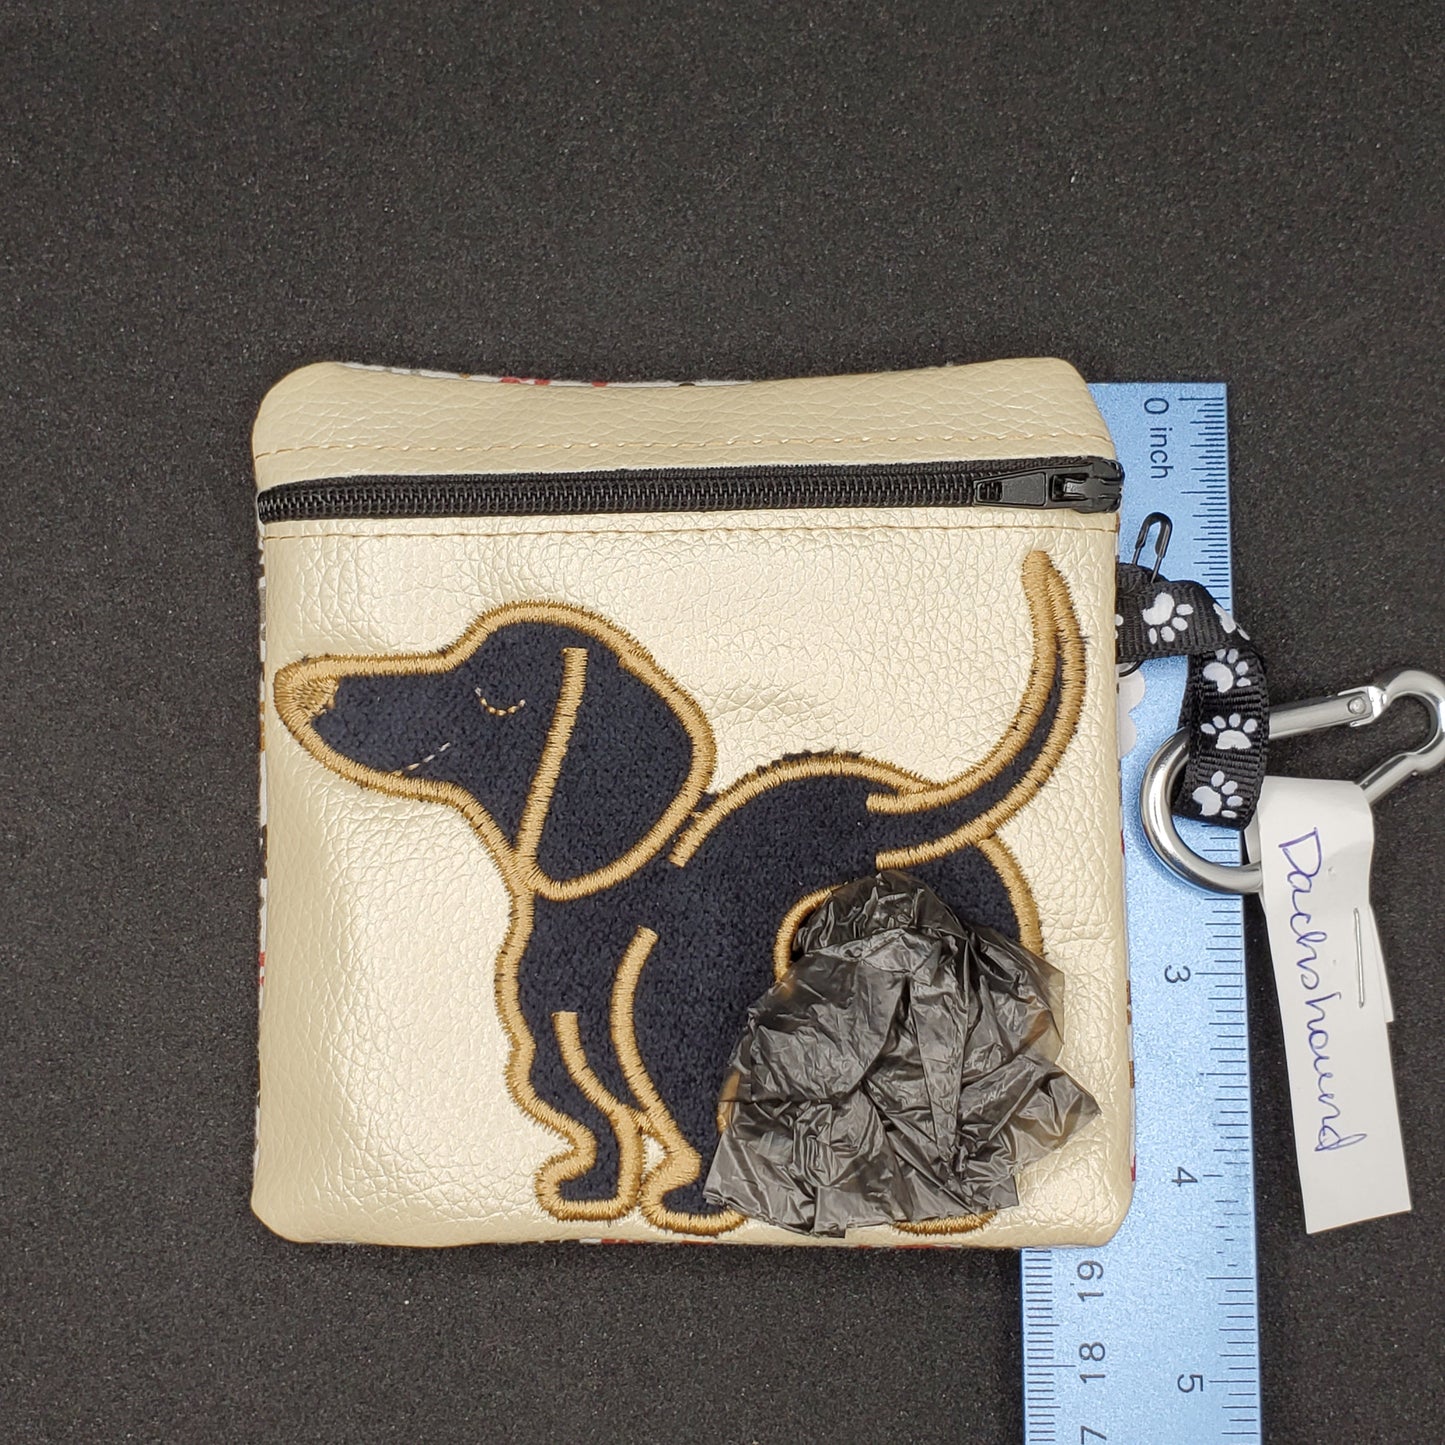 Dachshund -black dog, tan outline and light colored bag- Pet Poo/waste bag holder